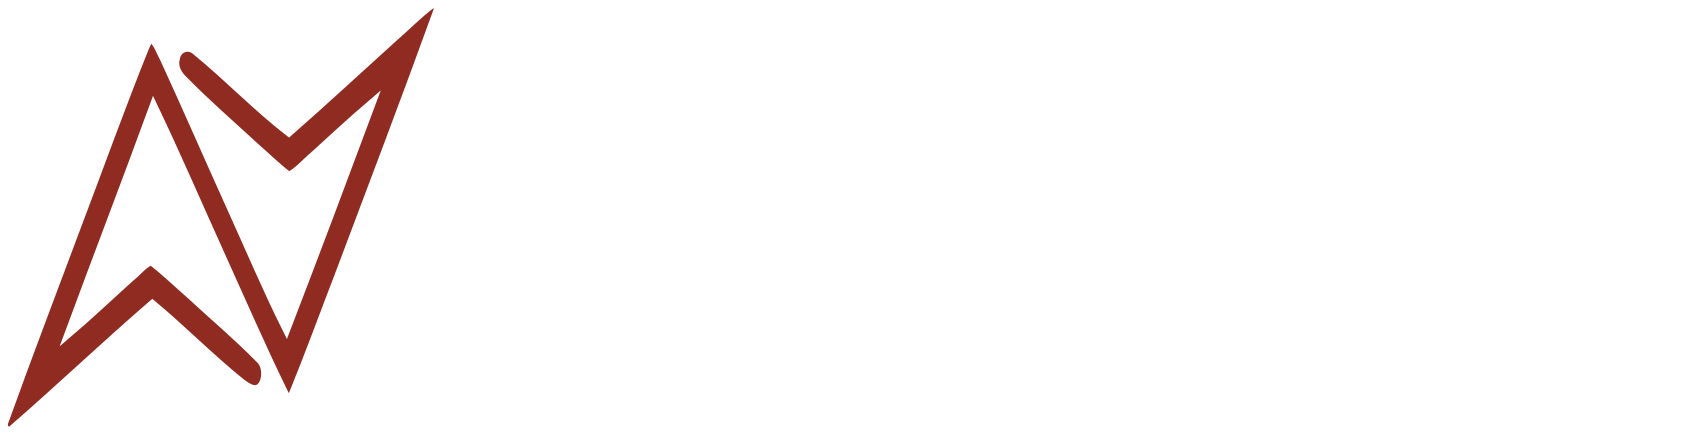 Nolasco Ascensori Logo